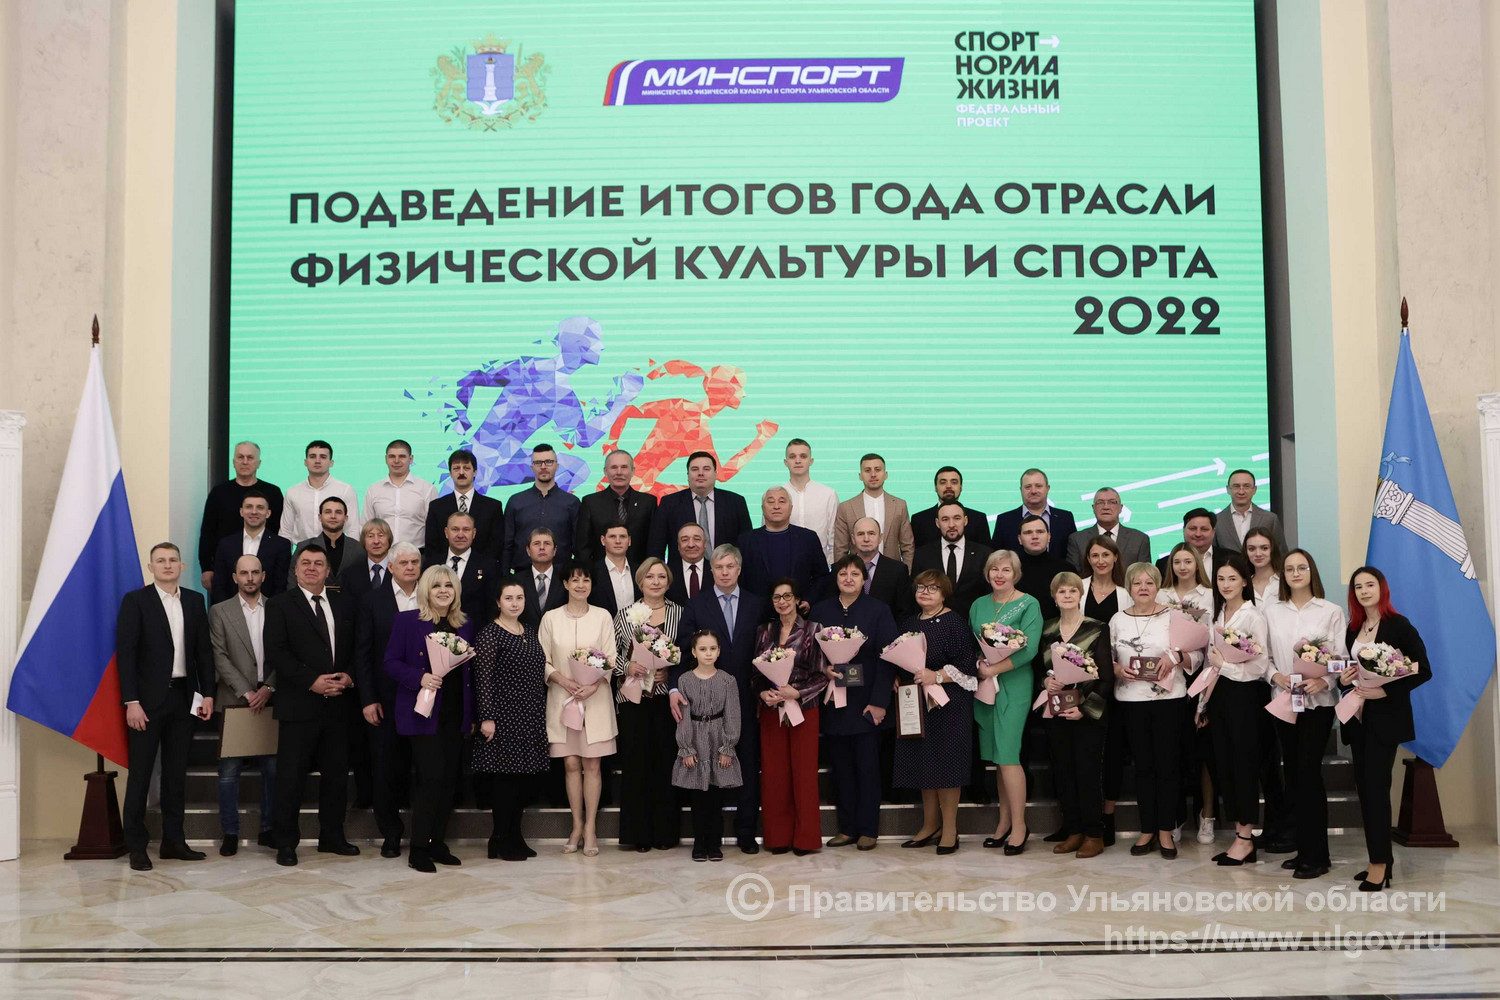 Русских наградил представителей отрасли физической культуры и спорта